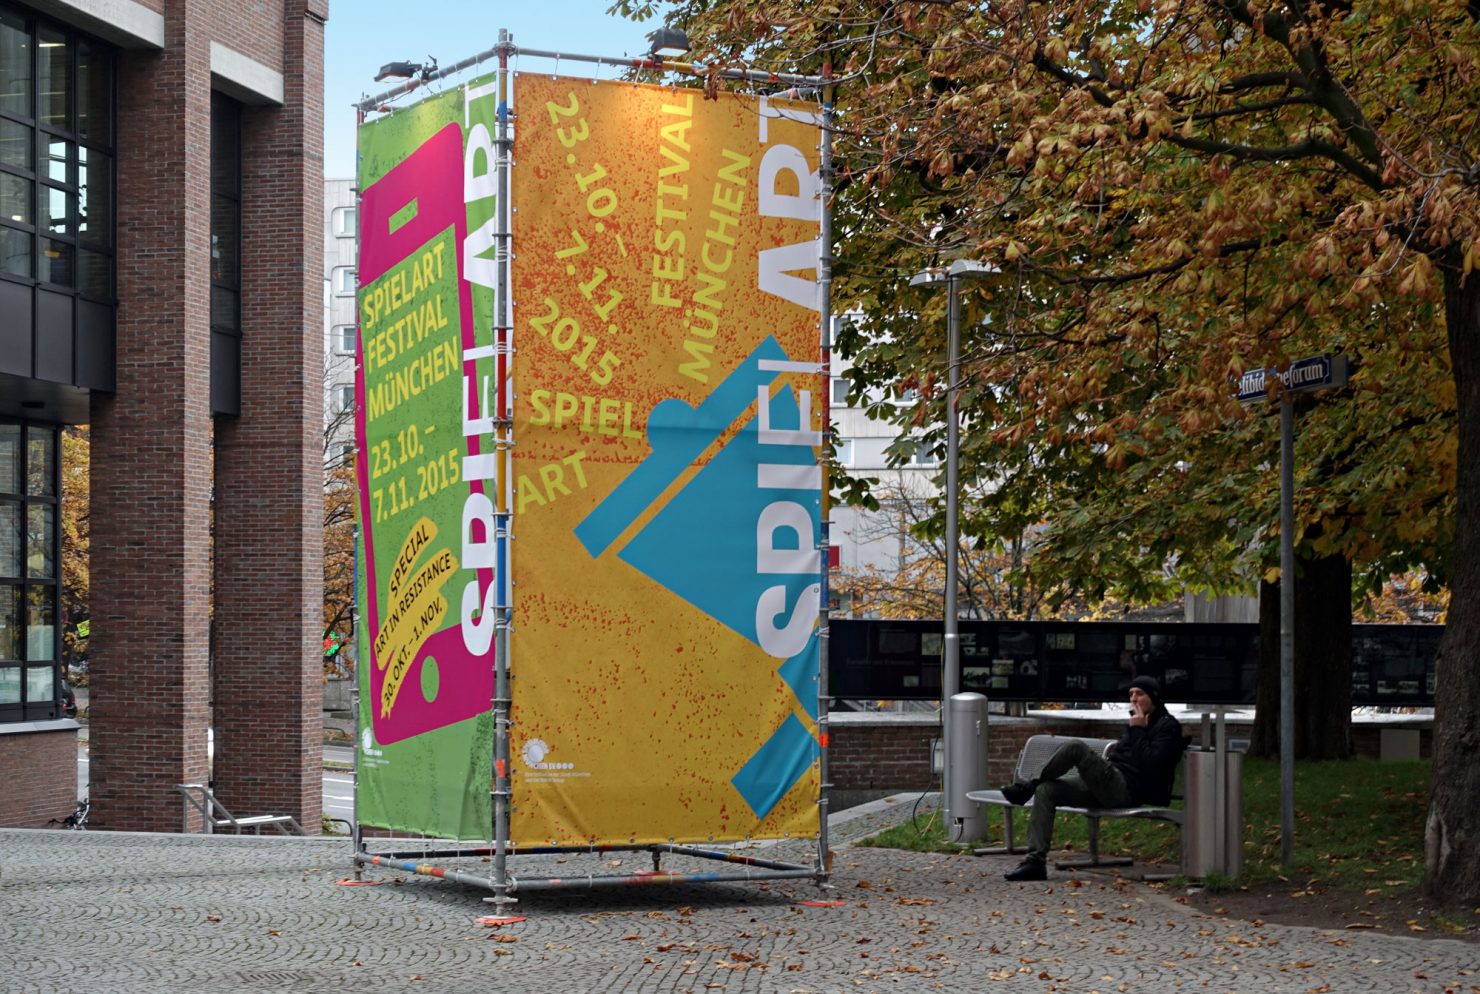 Aussenwerbung Werbewürfel spielart 2015 theaterfestival Münchenr